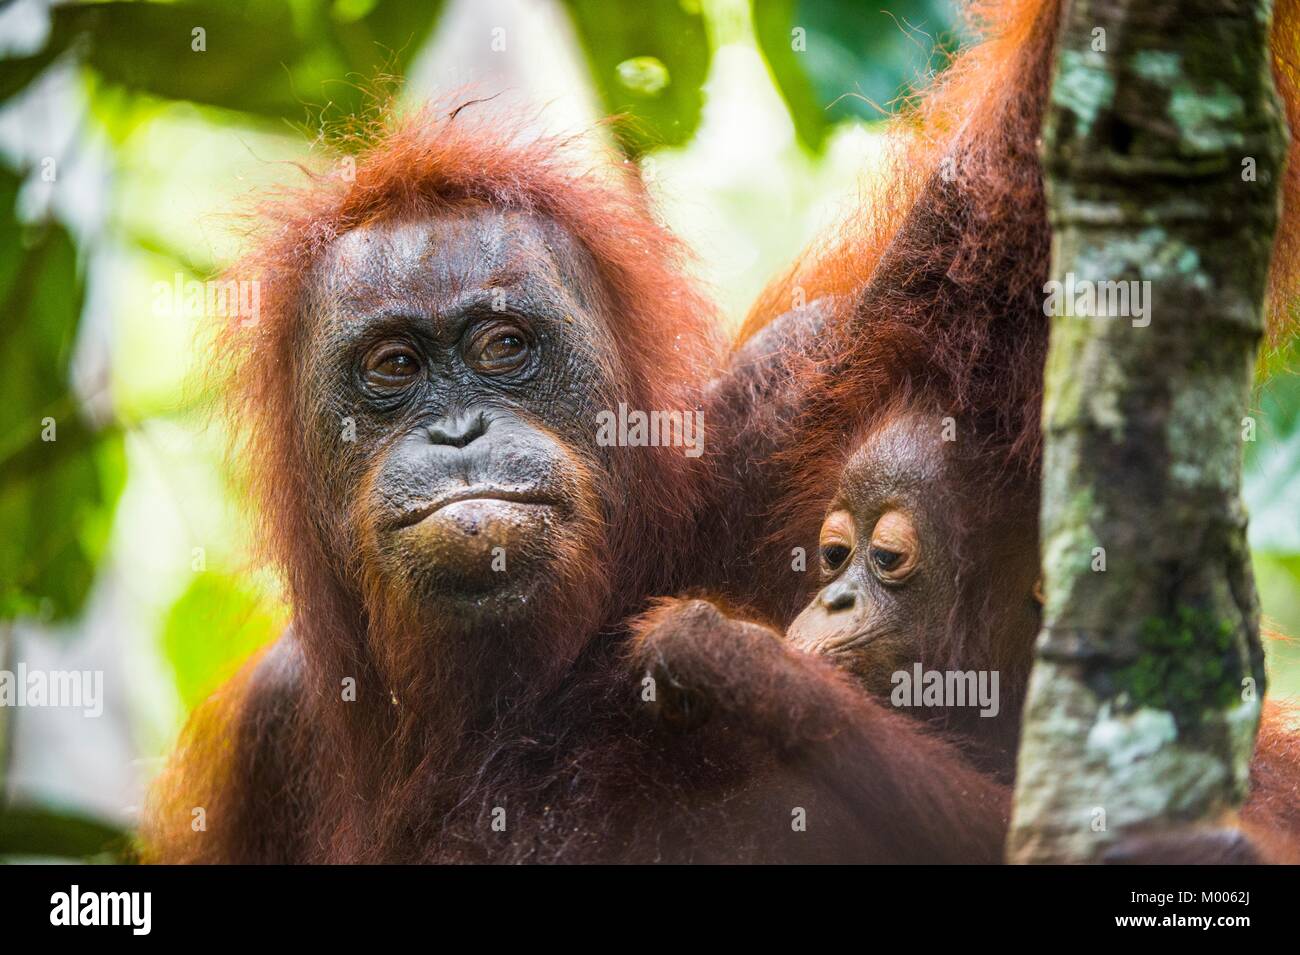 Mutter Orang-utan und Cub in einen natürlichen Lebensraum. Bornesischen Orang-utan (Pongo pygmaeus wurmbii) in der wilden Natur. Regenwald der Insel Borneo. Indonesien. Stockfoto